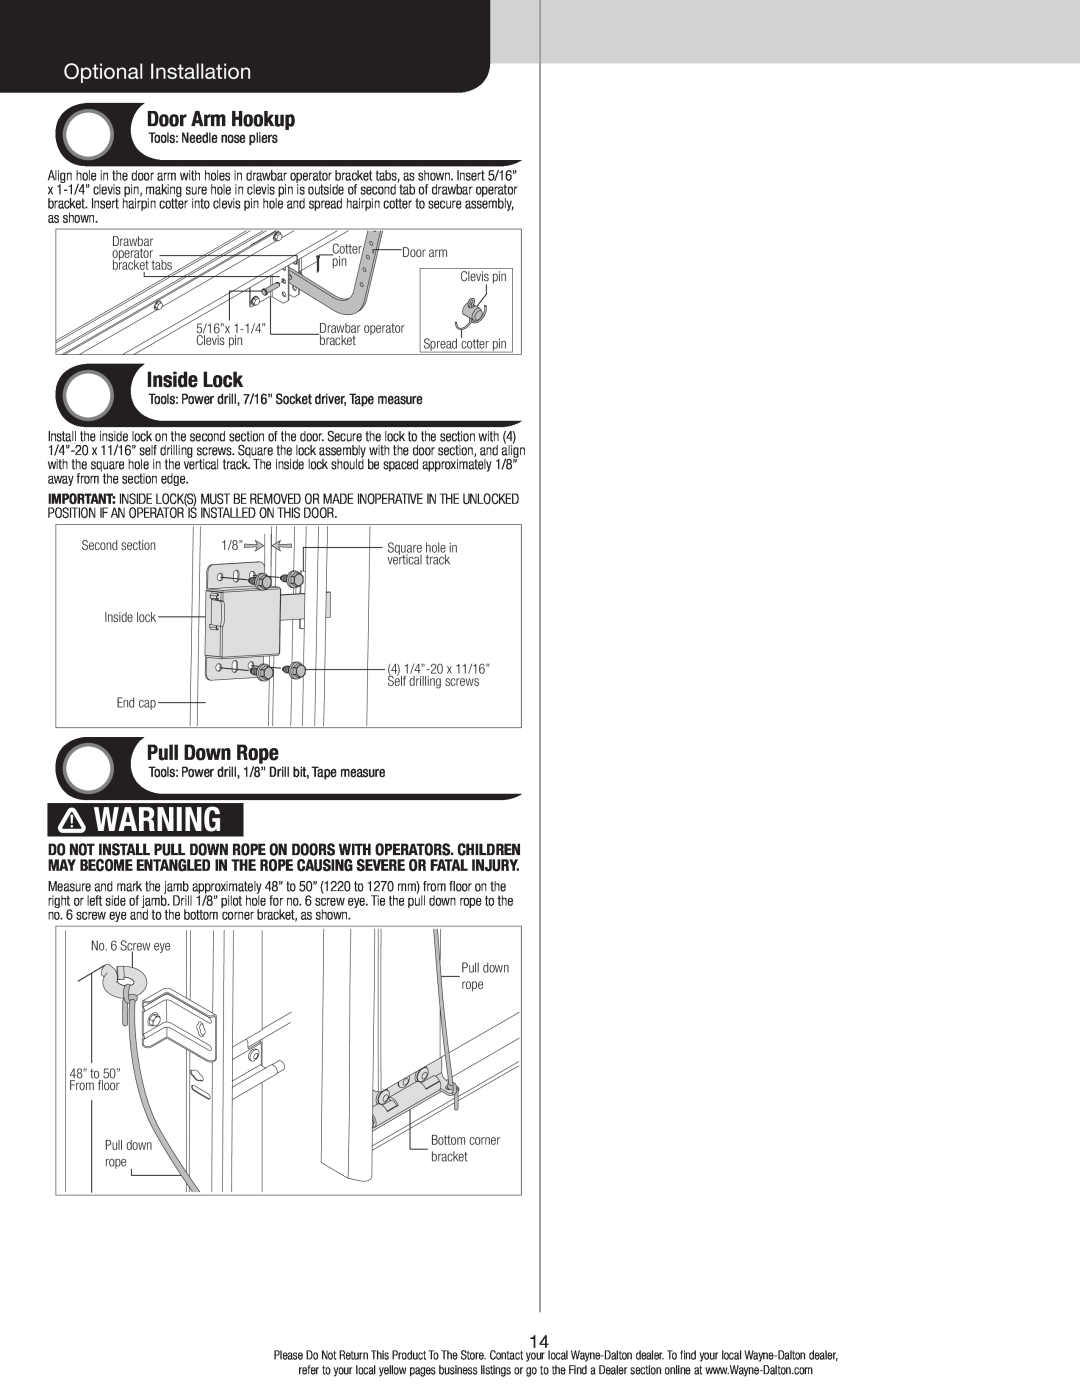 Wayne-Dalton 9800 installation instructions Optional Installation, Door Arm Hookup, Inside Lock, Pull Down Rope 